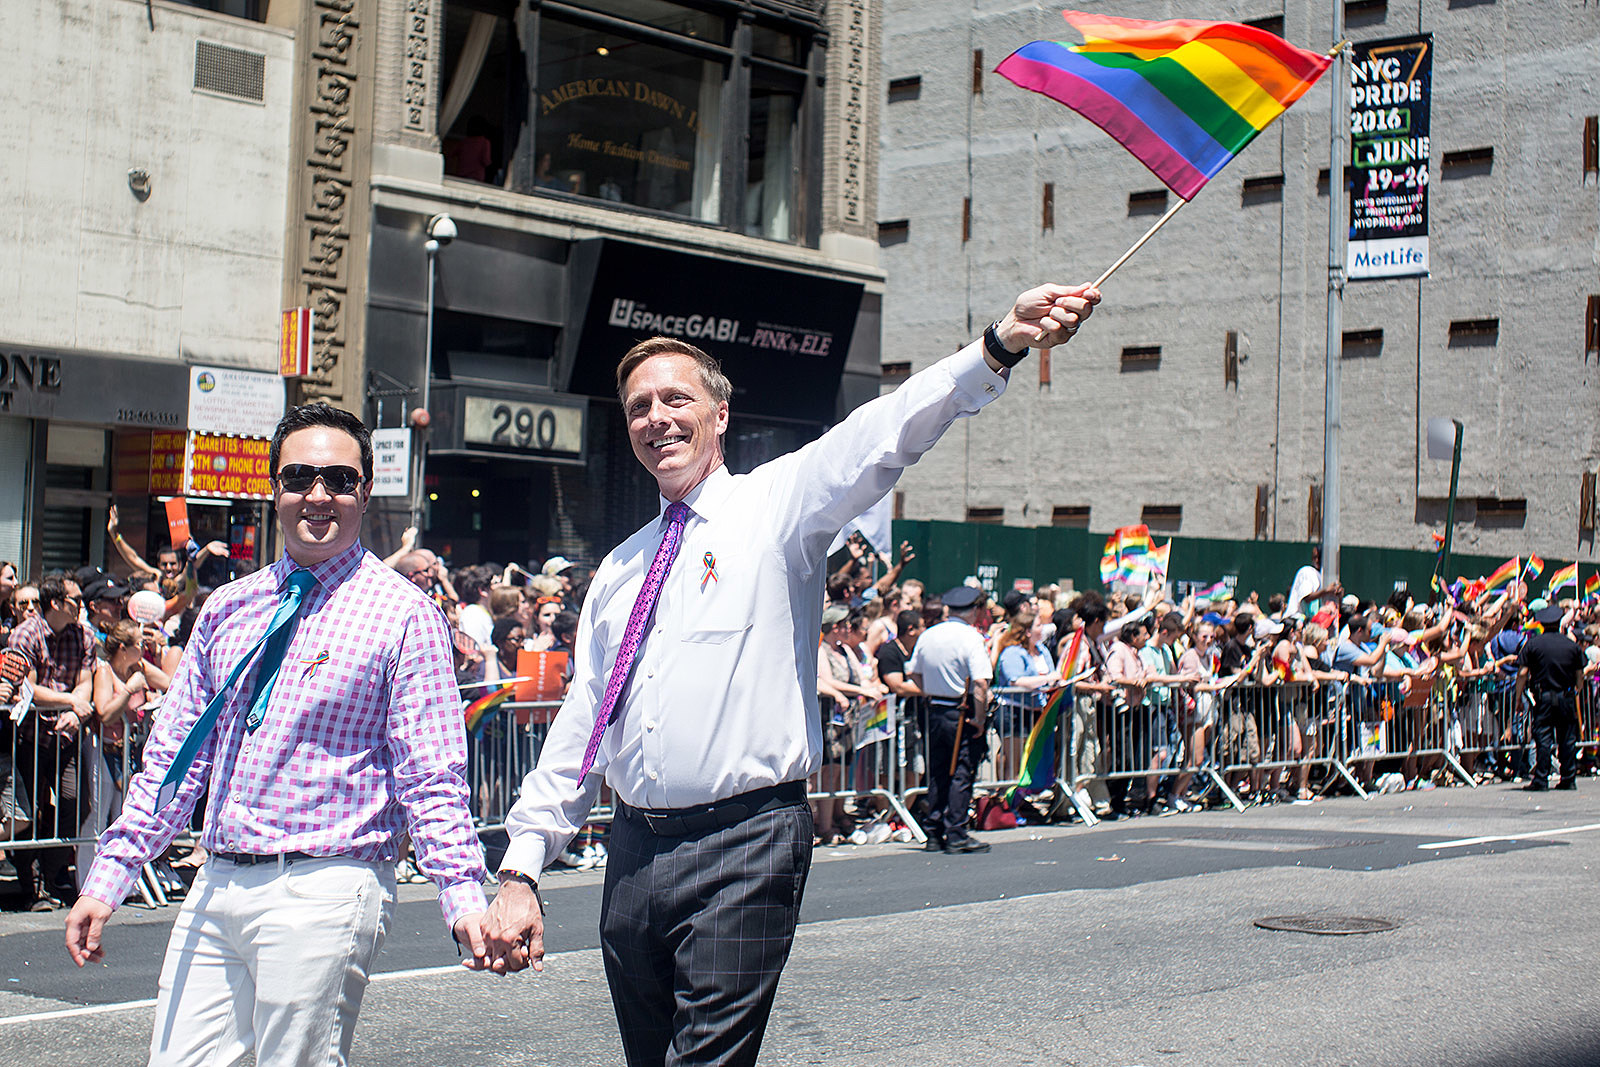 NYC Gay Pride March 2016